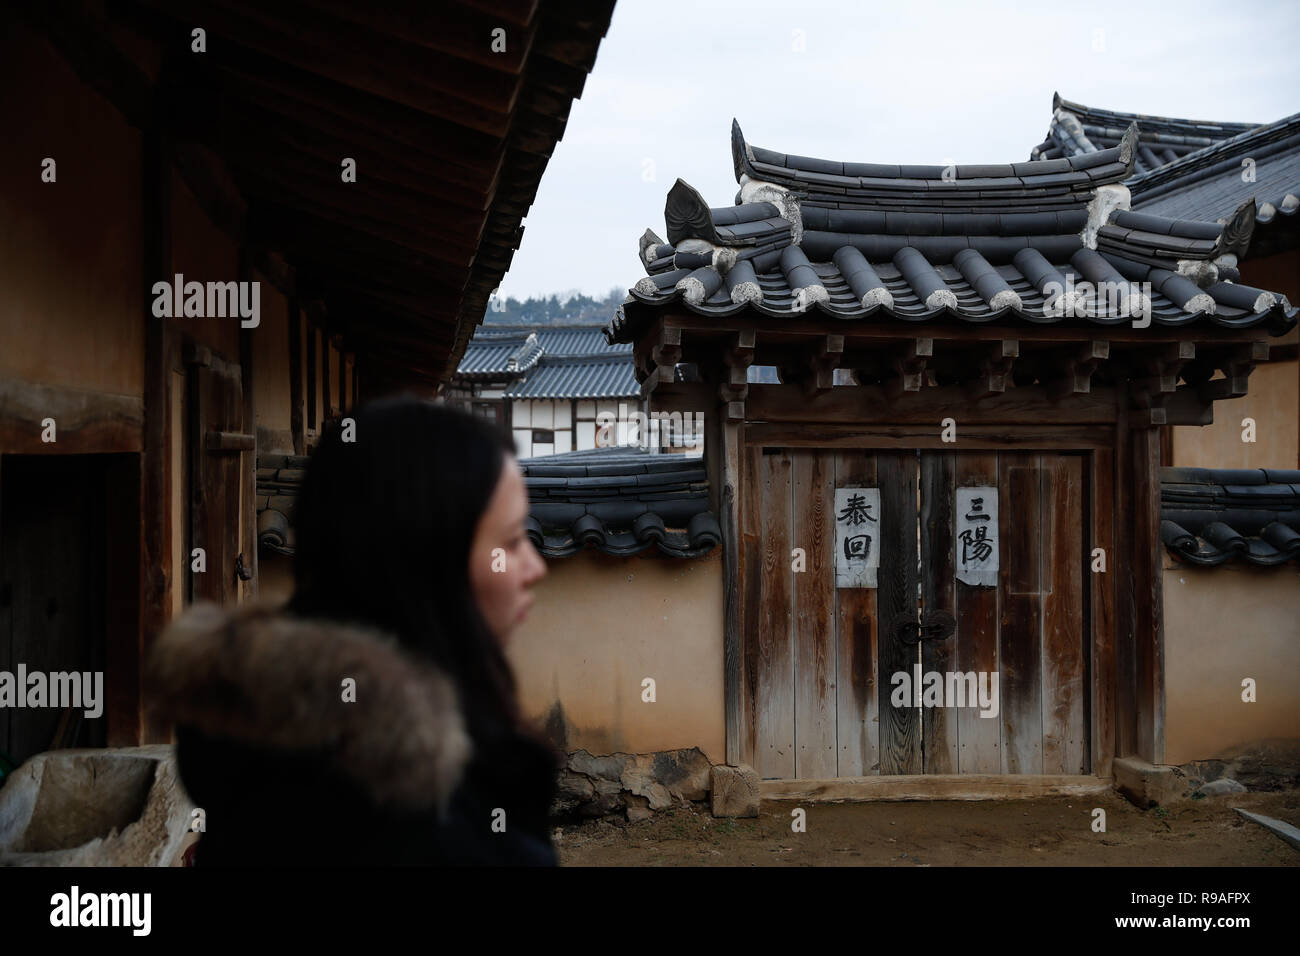 Andong, Corea del Sud. Xxi Dec, 2018. Un turista in visita il villaggio Hahoe di Andong di Gyeongsangbuk-do, Corea del Sud, 21 dicembre 2018. Il villaggio Hahoe è un tradizionale villaggio coreano che conserva periodo Joseon-architettura di stile, tradizioni popolari e una vecchia tradizione di clan-basata di stili di vita. Il villaggio è stato elencato dall UNESCO come Sito del Patrimonio Mondiale nel 2010. Credito: Wang Jingqiang/Xinhua/Alamy Live News Foto Stock